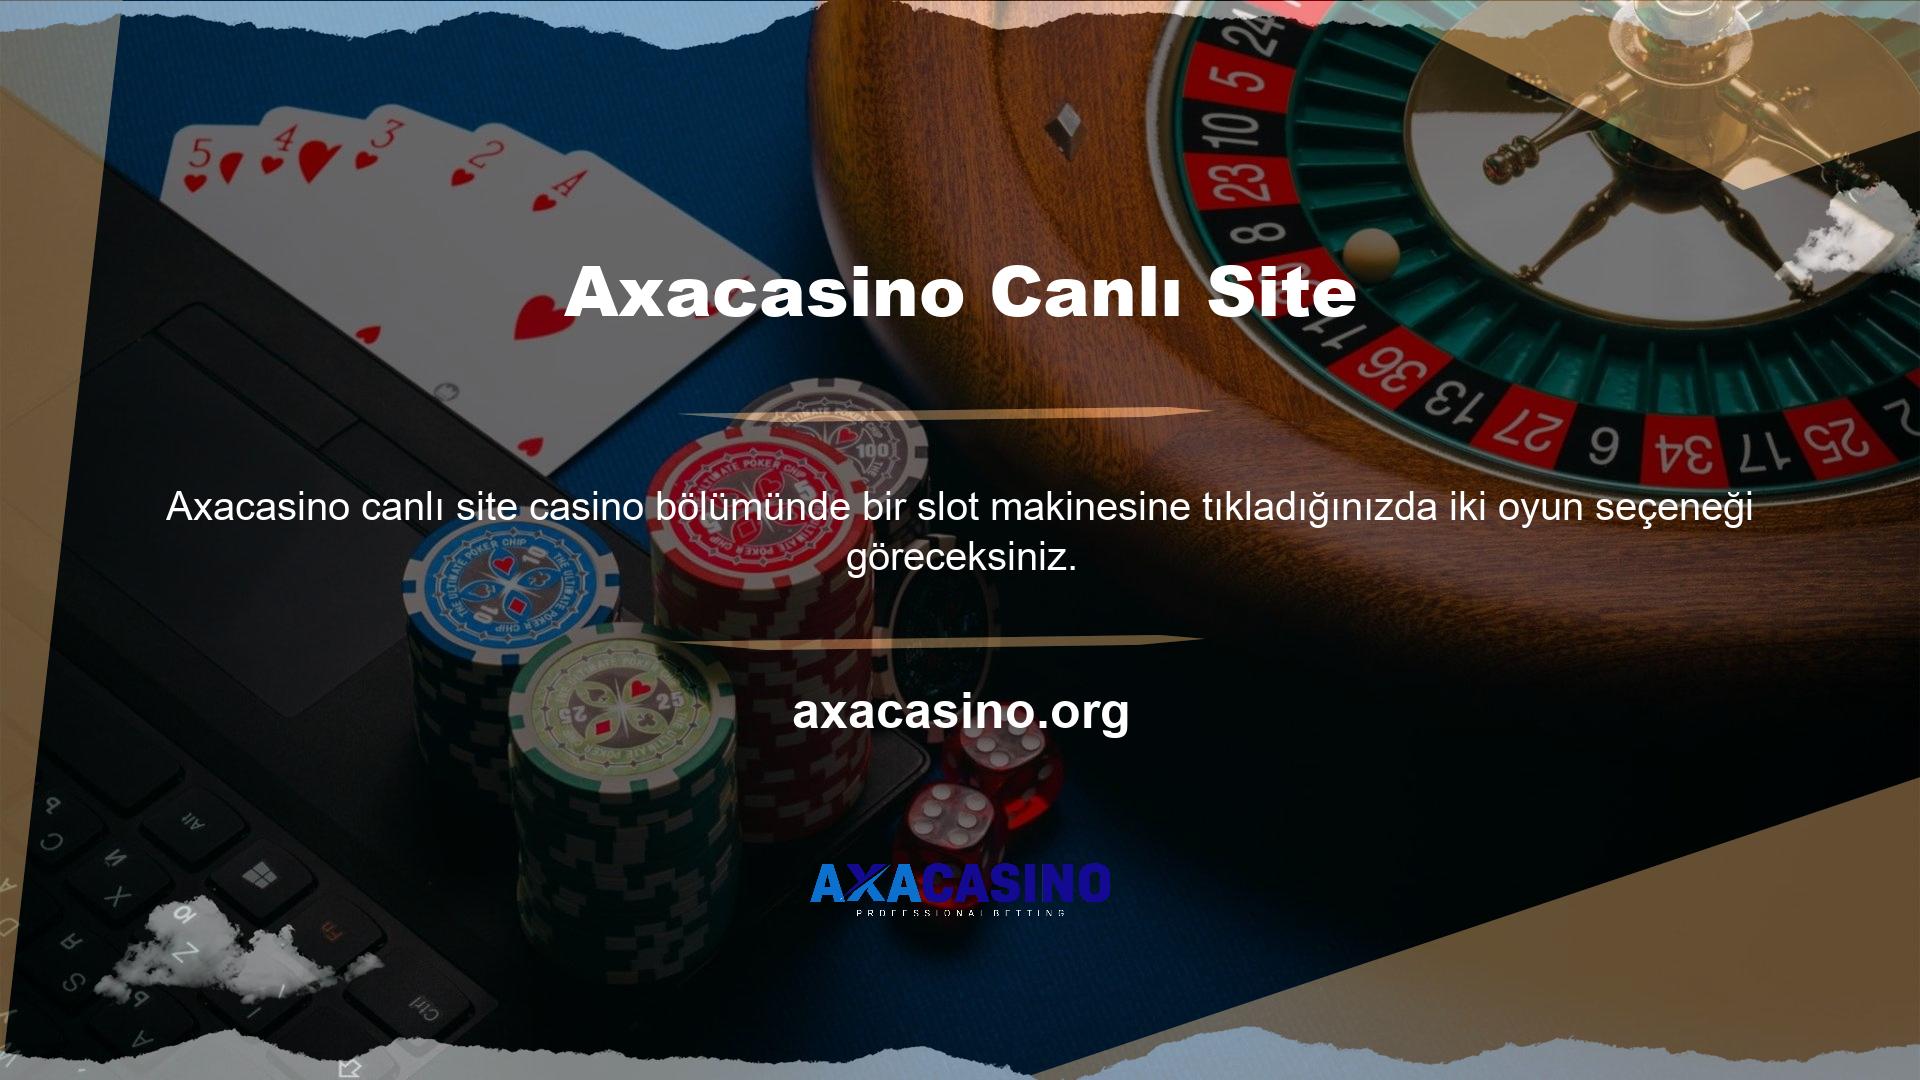 Axacasino slotunda “oyna” butonuna tıklayan oyuncular bahislerini oynayabilirler